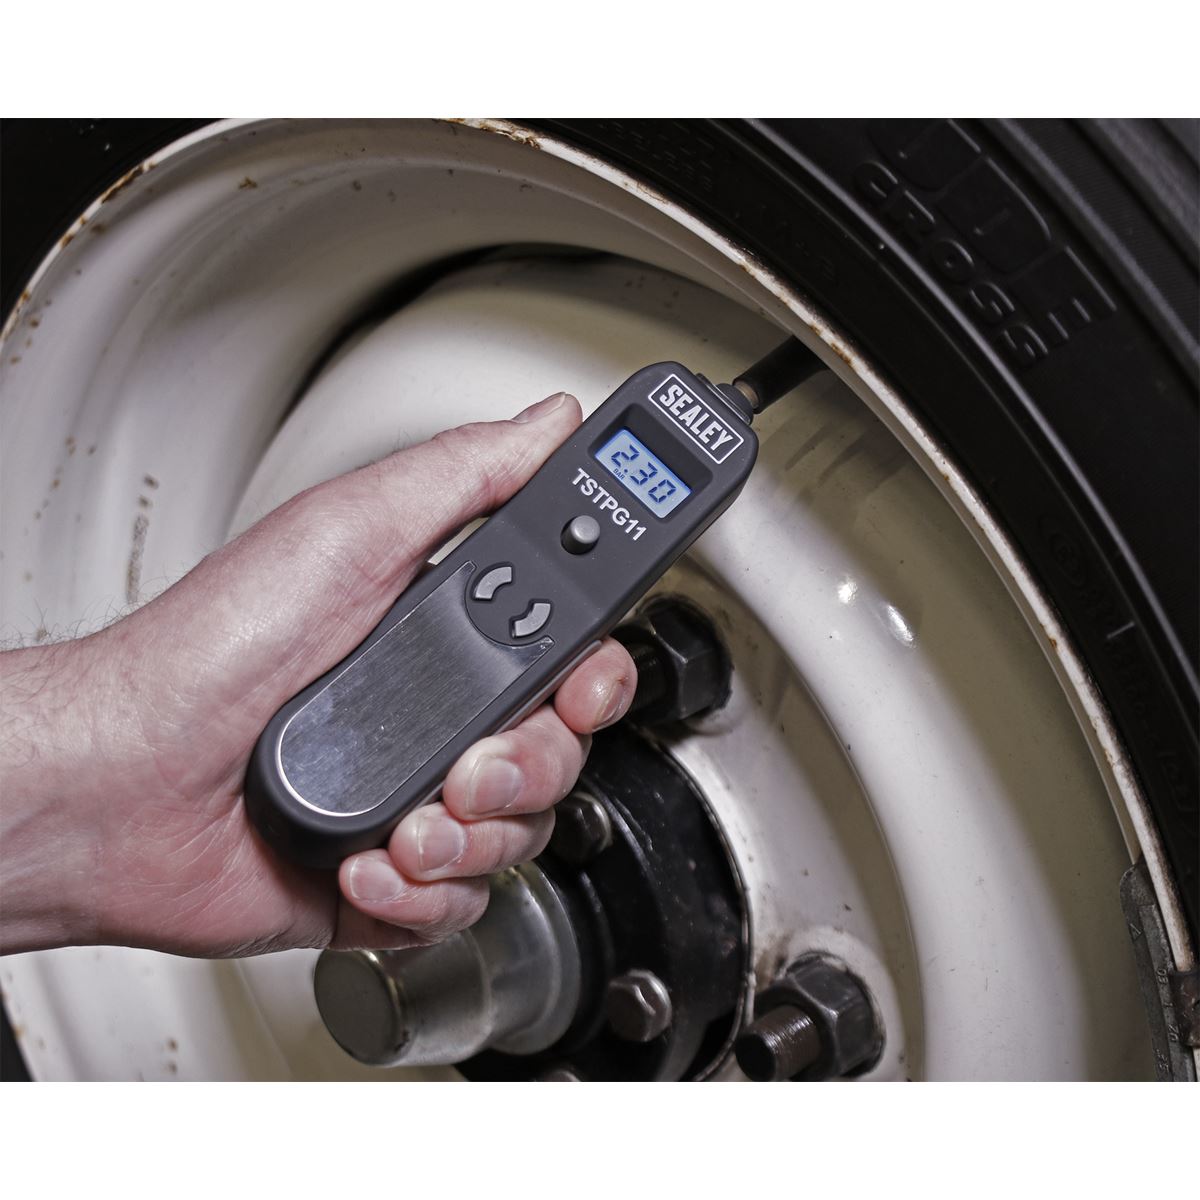 Sealey Digital Tyre Pressure & Tread Depth Gauge TSTPG11